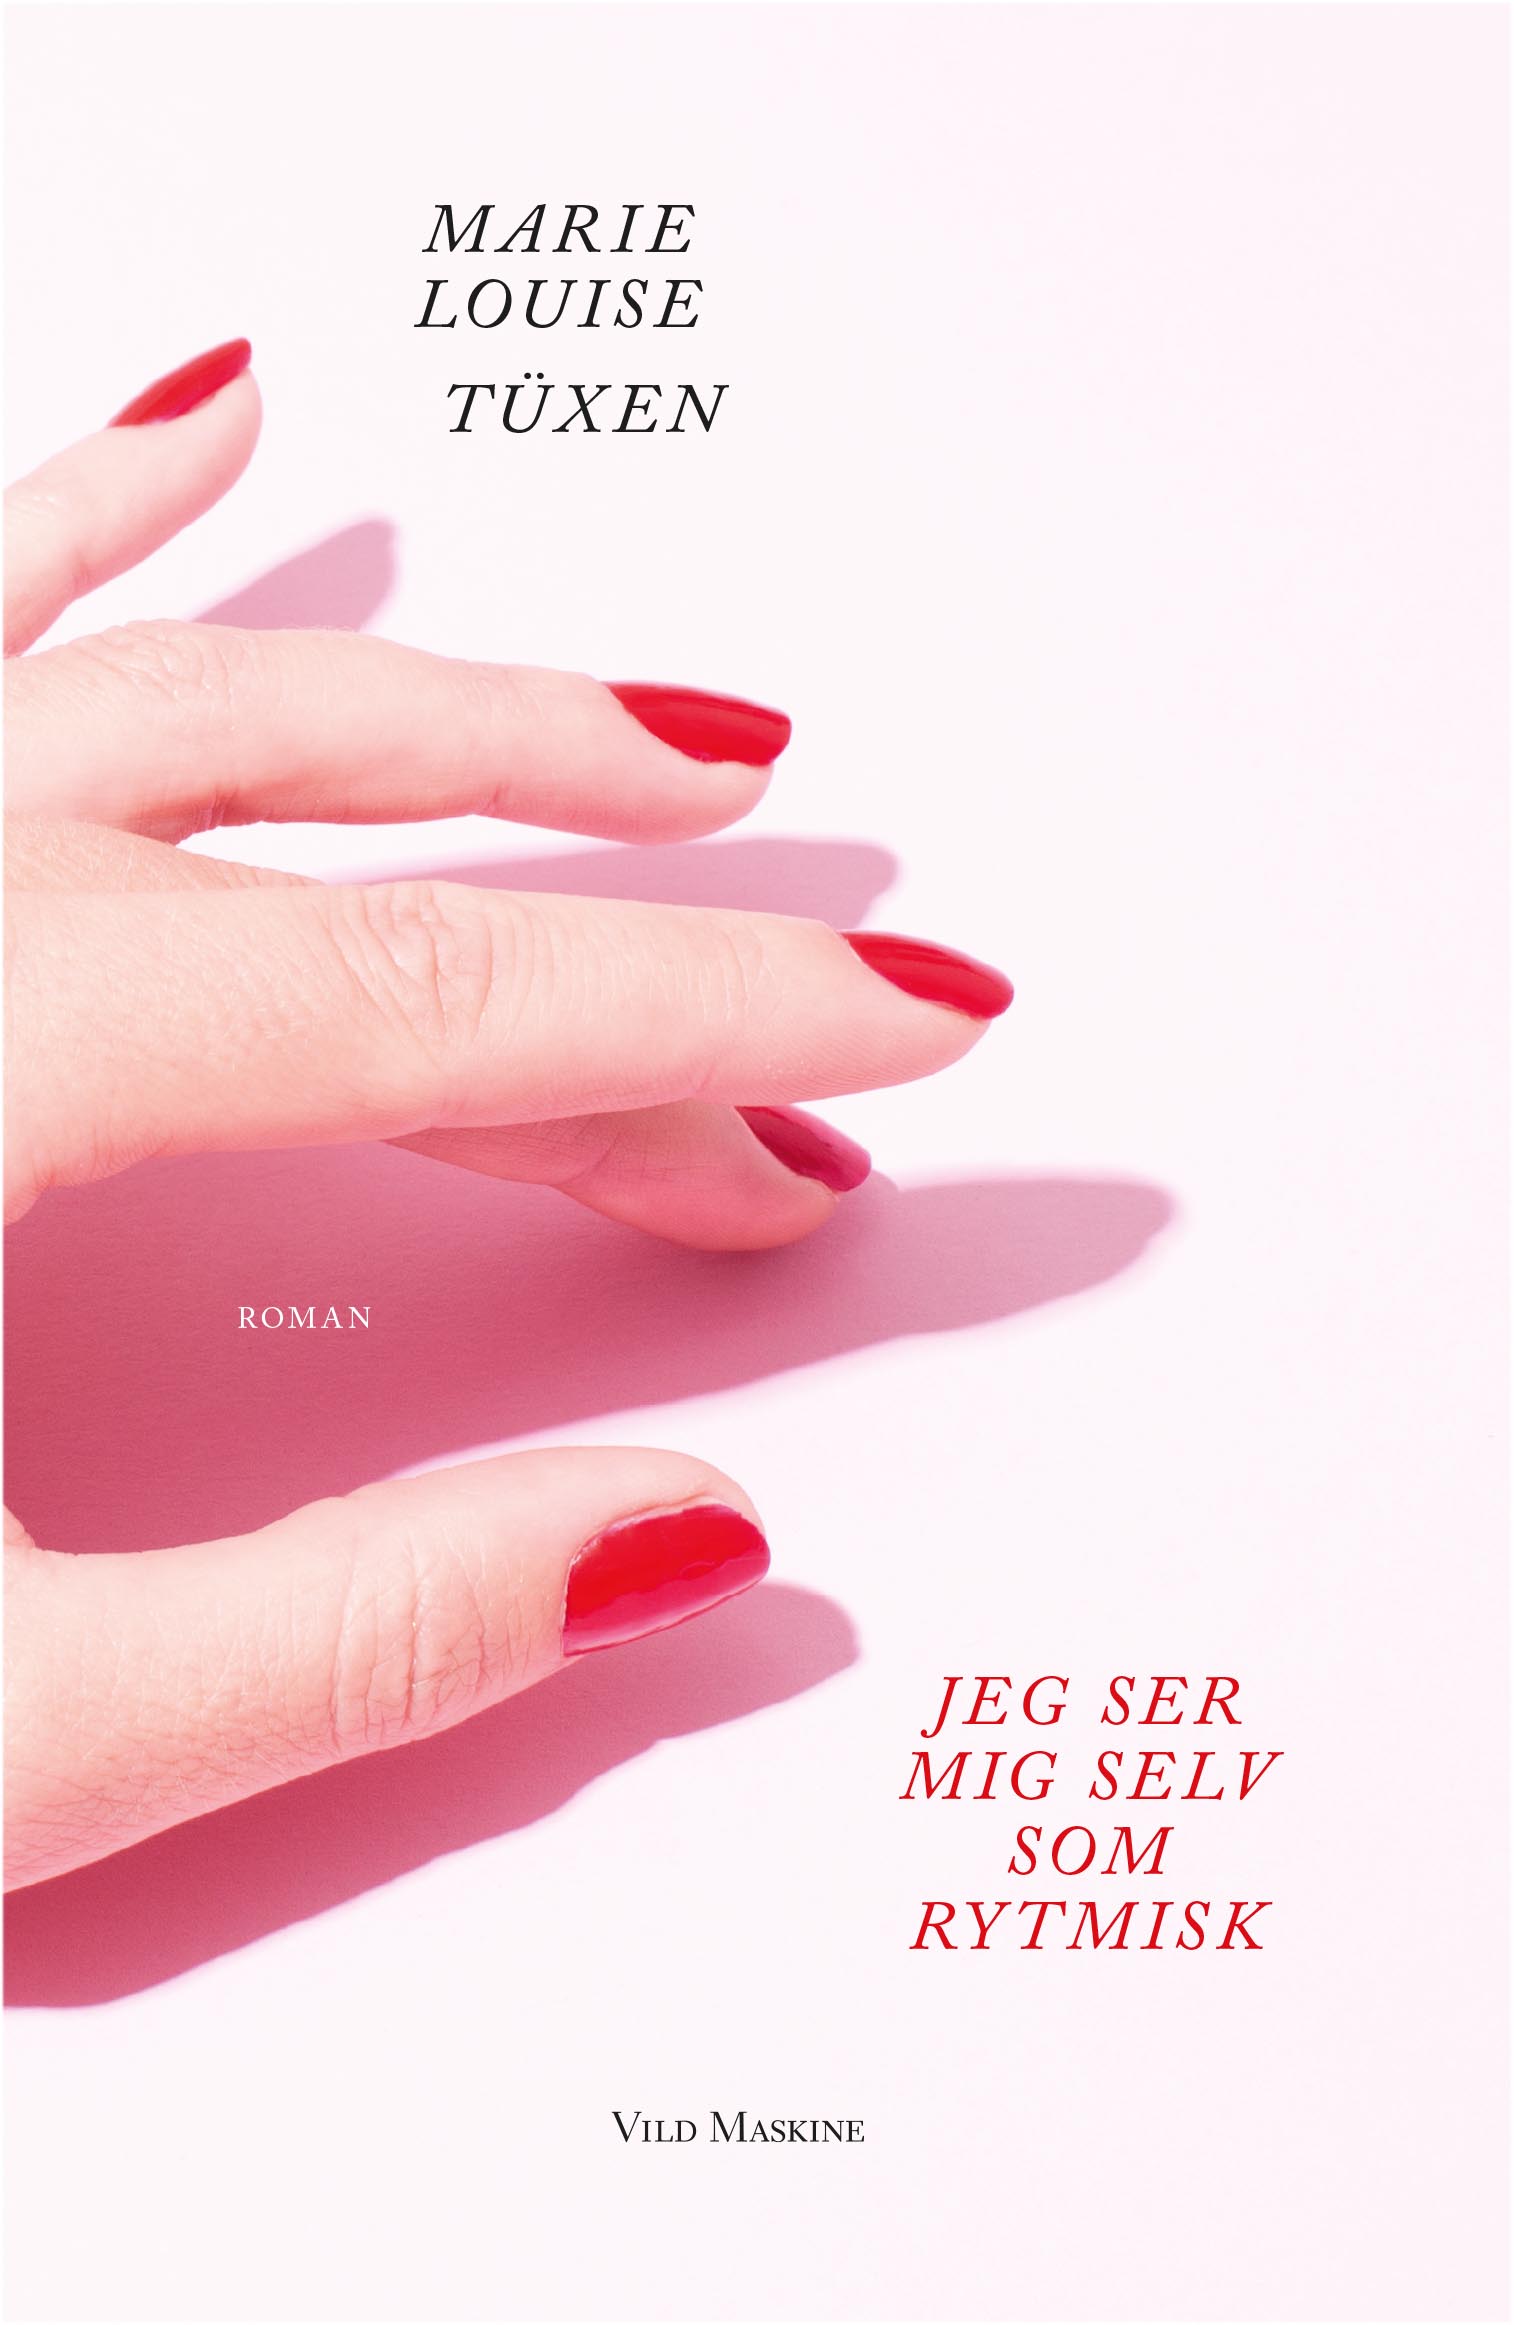 Jeg ser mig selv som rytmisk, debutroman af Marie Louise Tüxen. Udkommer 11. oktober 2017.